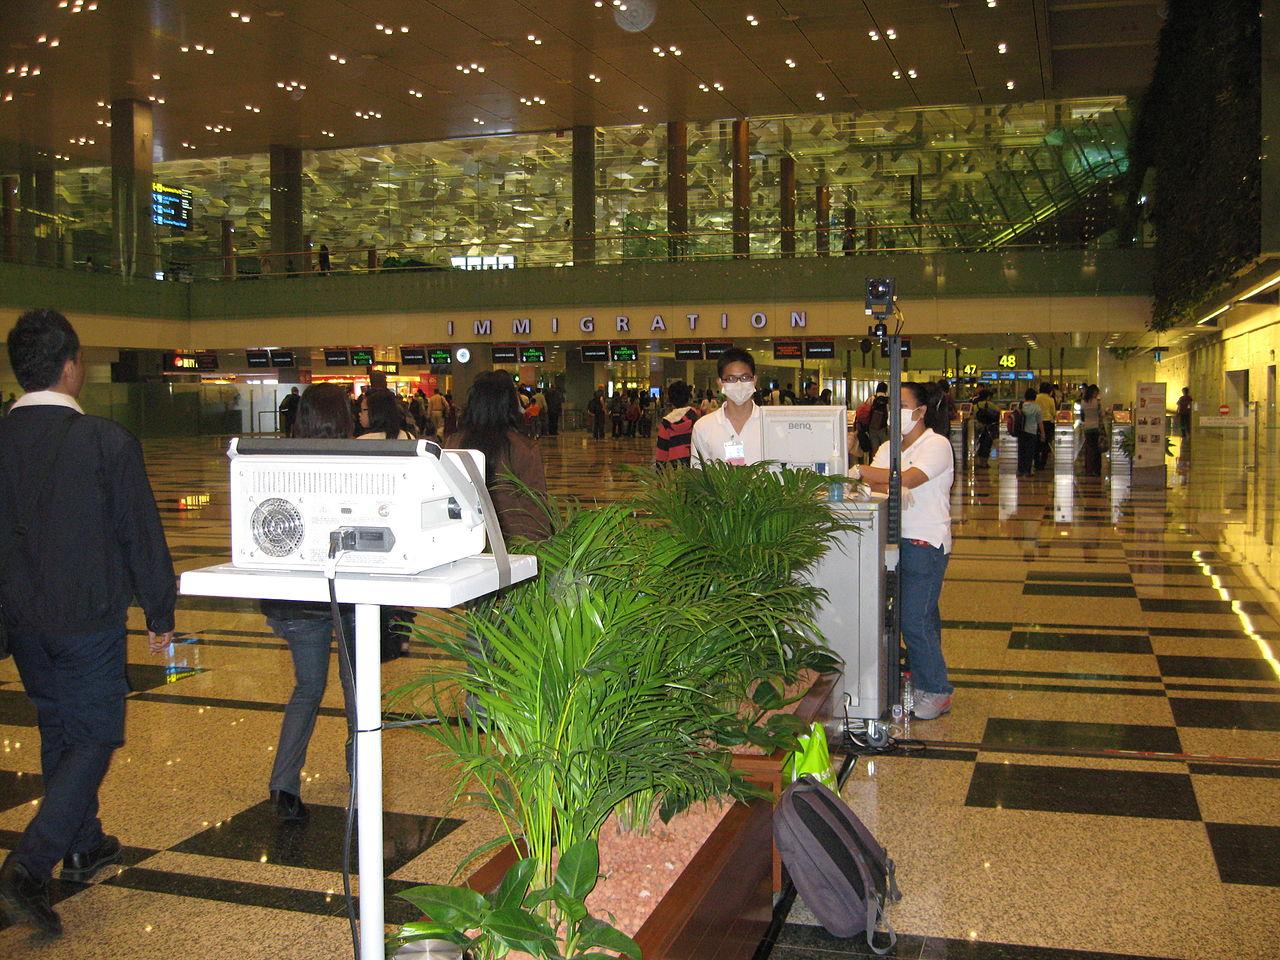 Дистанционное измерение температуры тела пассажиров, прибывающих в аэропорт Сингапура. Фото © Wikimedia Commons